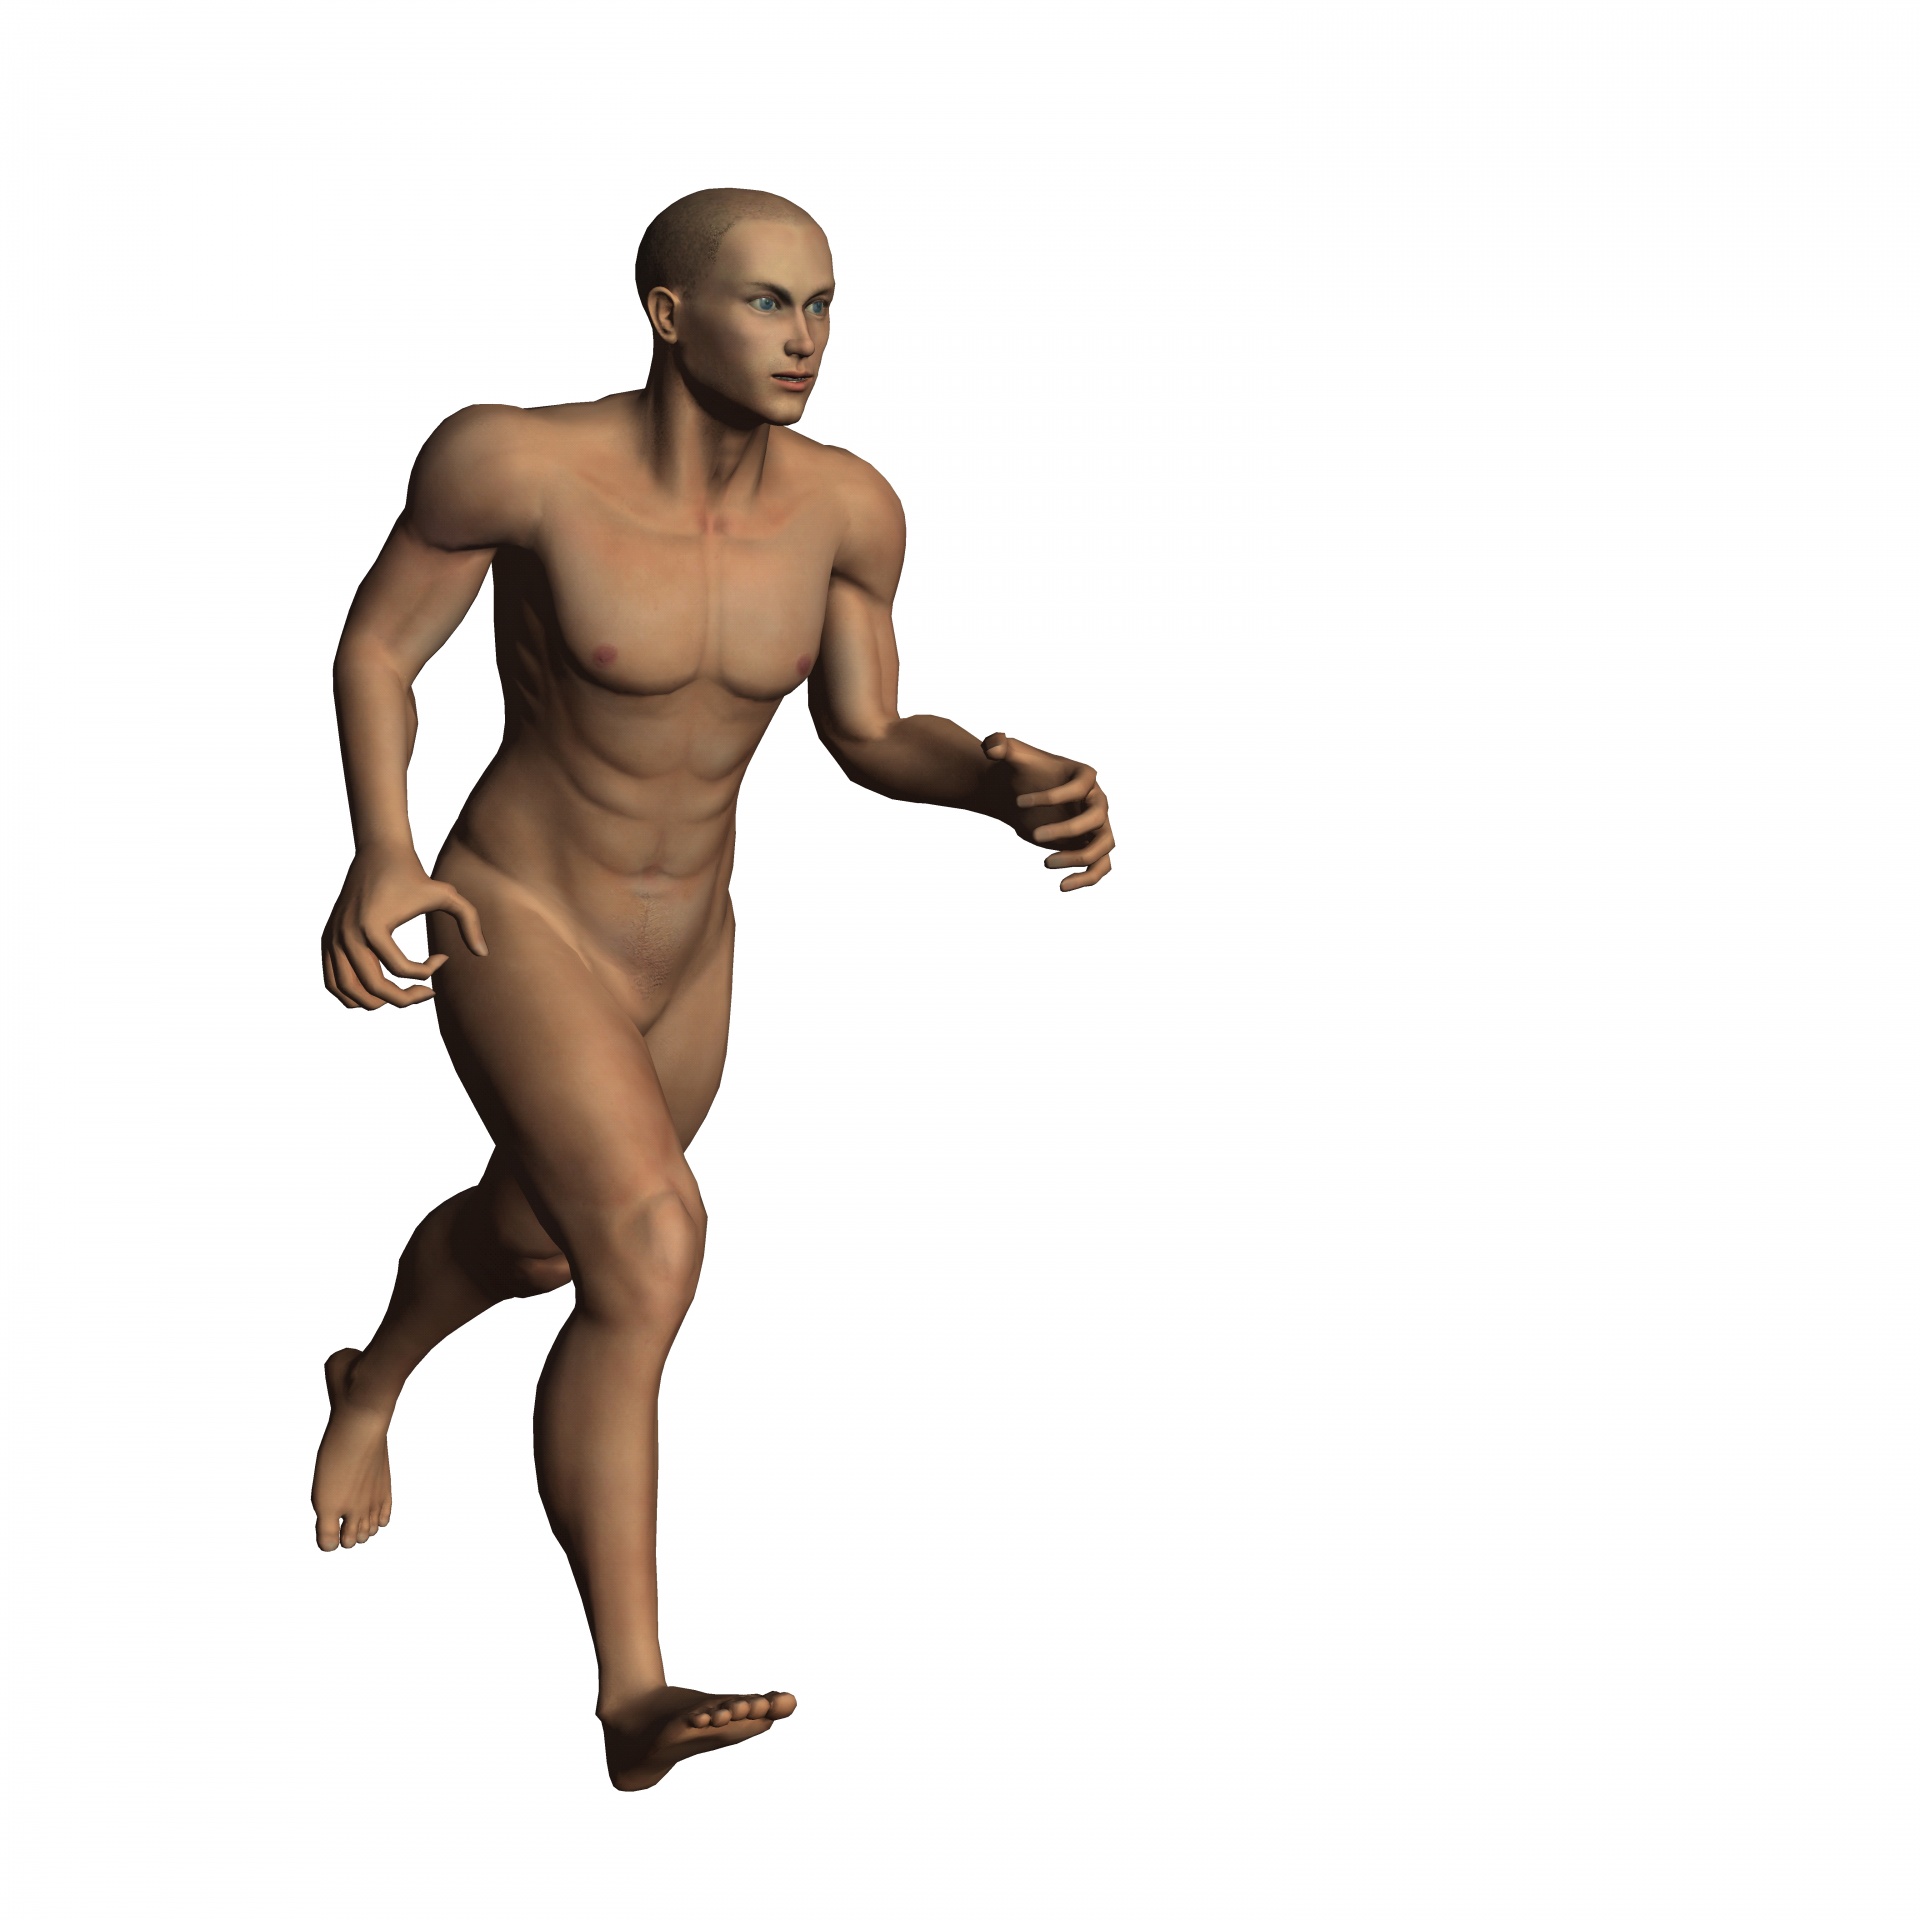 Man Running 2